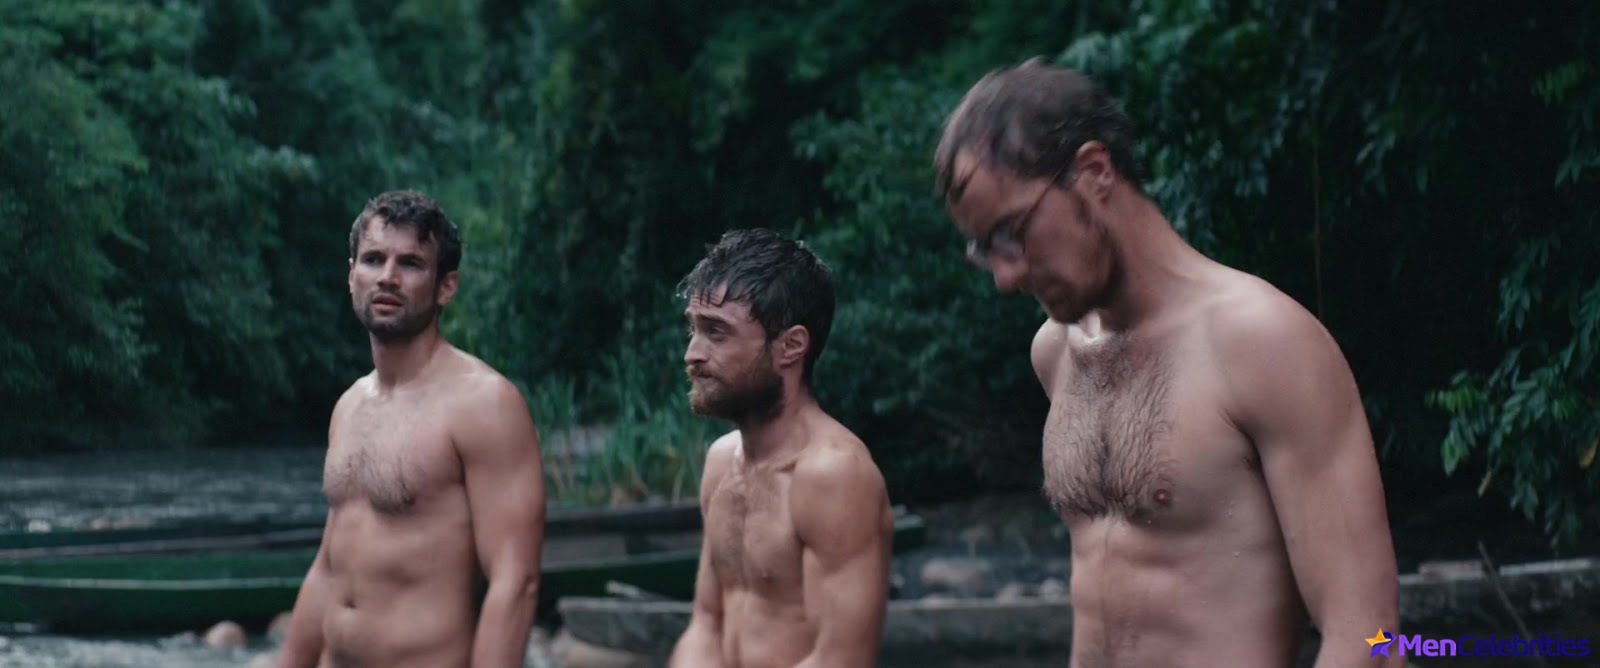 Daniel Radcliffe nude gay sex movie scenes.